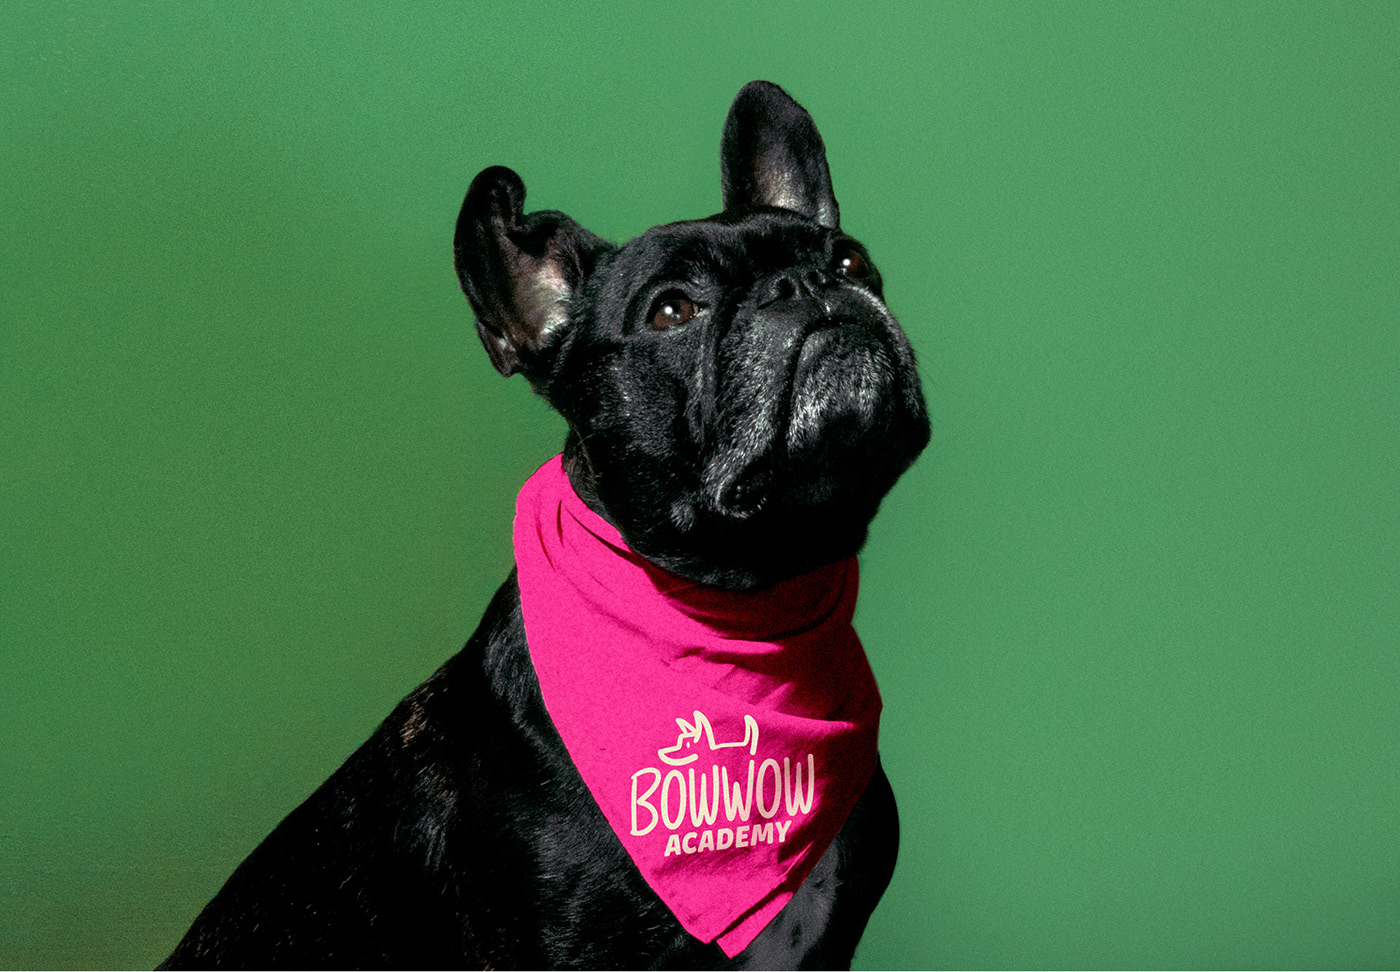 Rebrand academy Bowwow brand dog dynamic logo identity logo Pet system